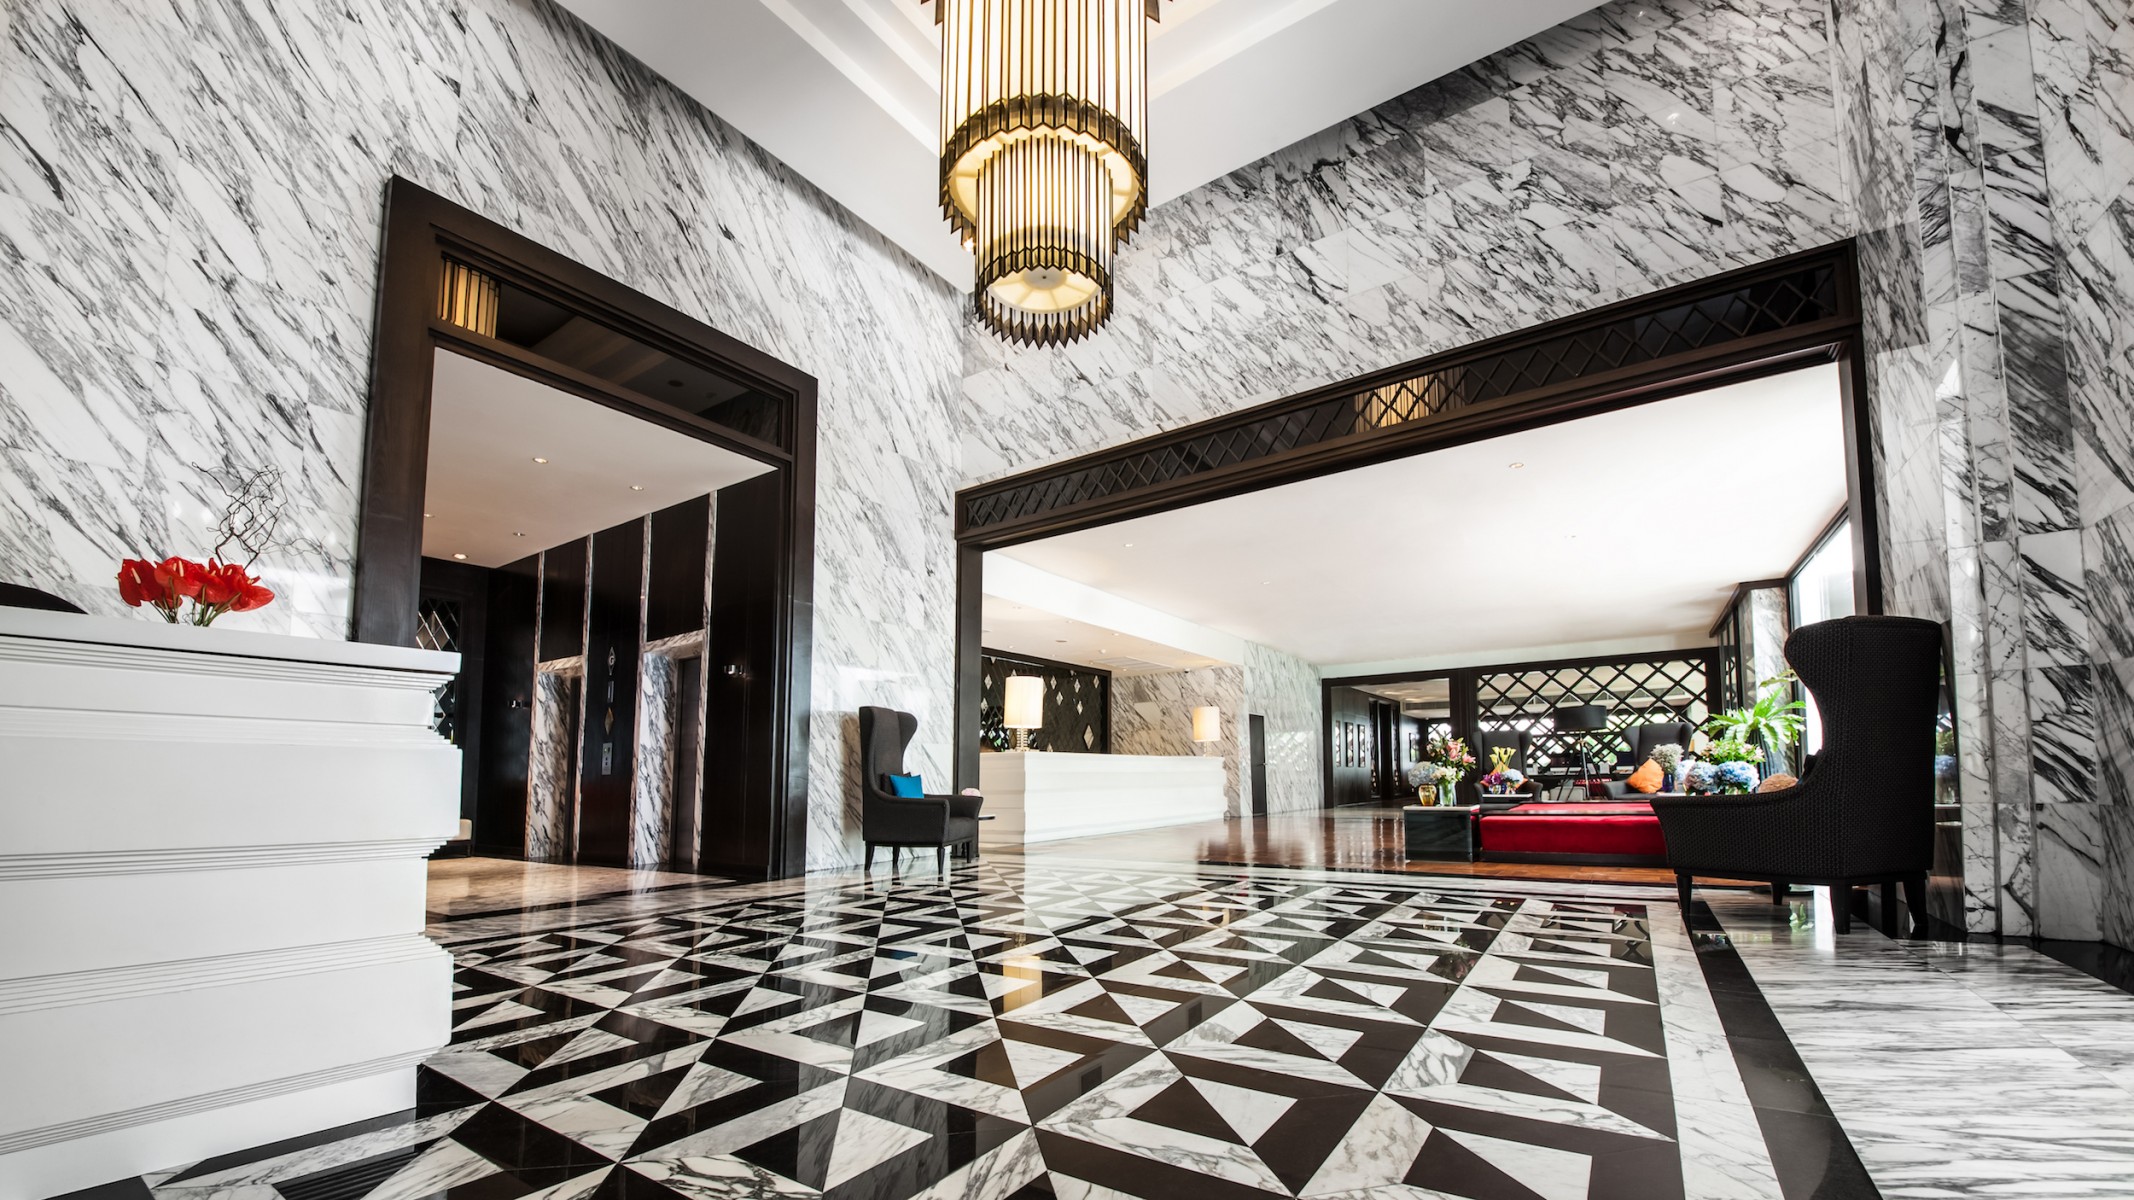 ยินดีต้อนรับสู่โรงแรมเมอเวนพิค สุขุมวิท 15 กรุงเทพฯ "โอเอซิสสุดหรูใจกลางกรุงเทพฯ"